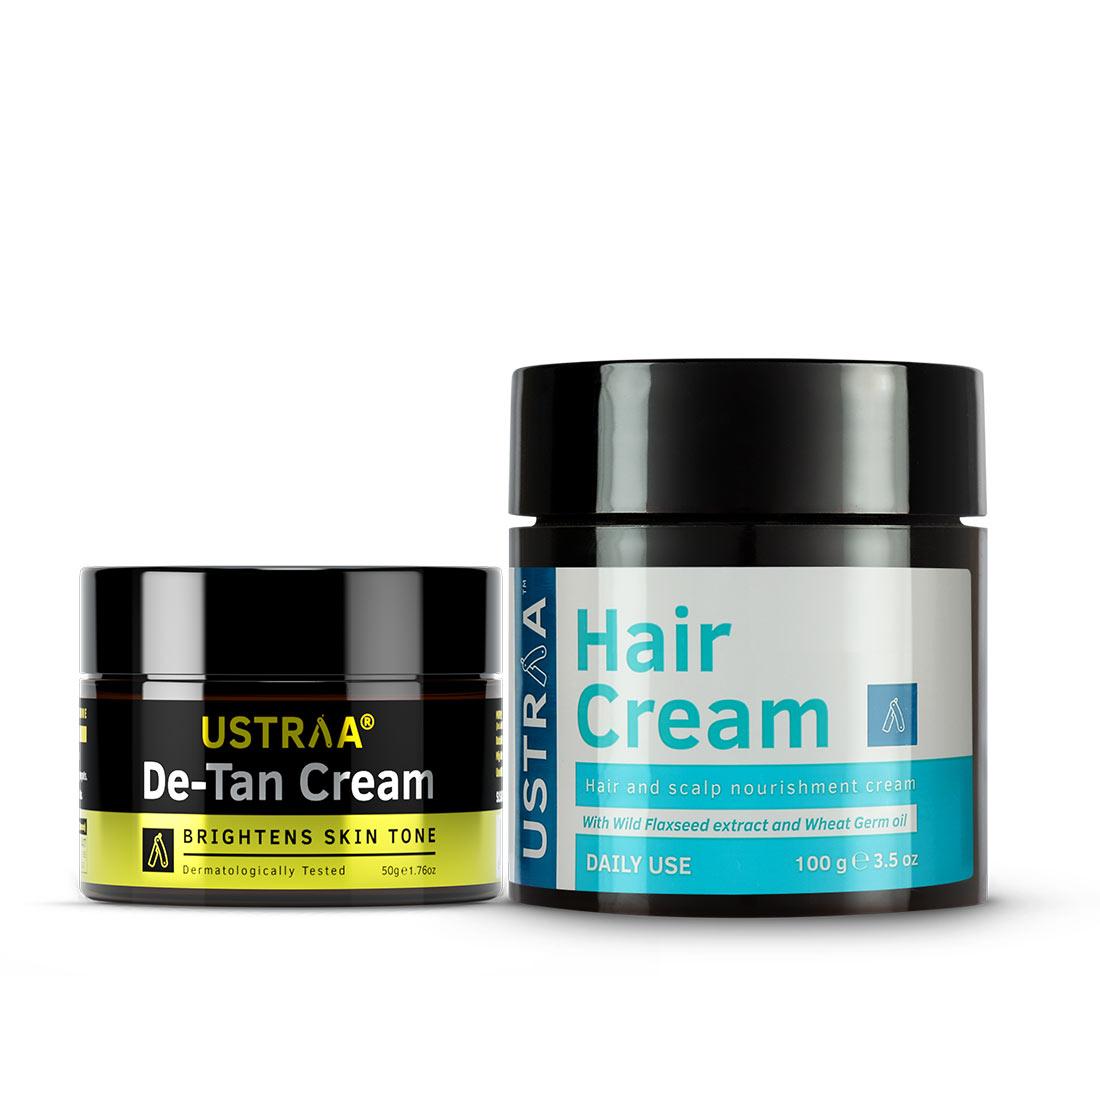 De-Tan Cream and Hair Cream daily Use